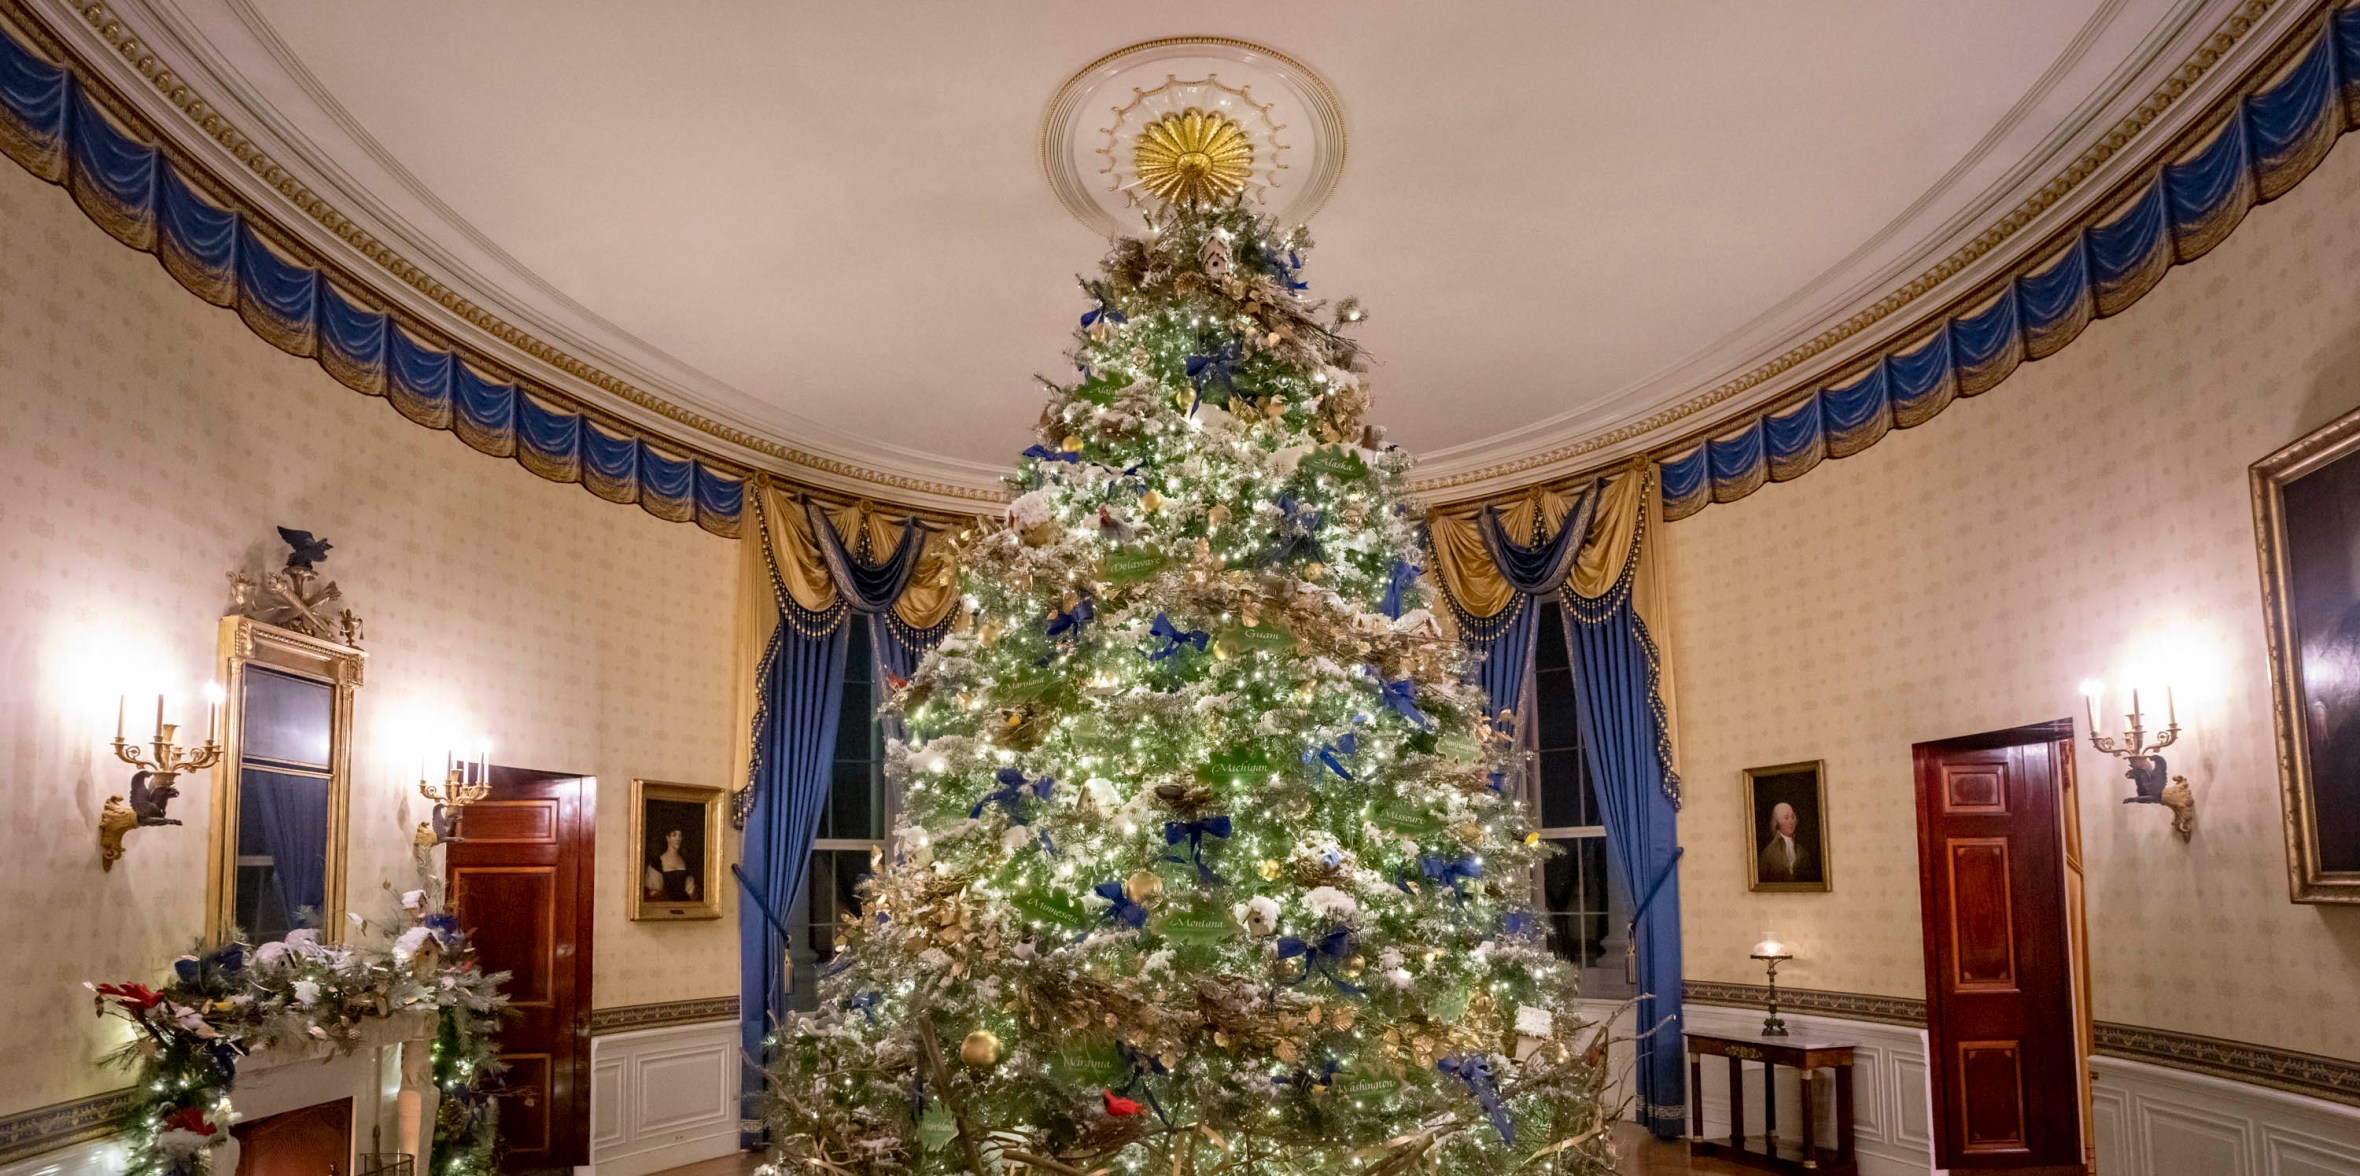 https://www.whitehouse.gov/wp-content/uploads/2021/01/tree-home-hero-1.jpg?w=2360